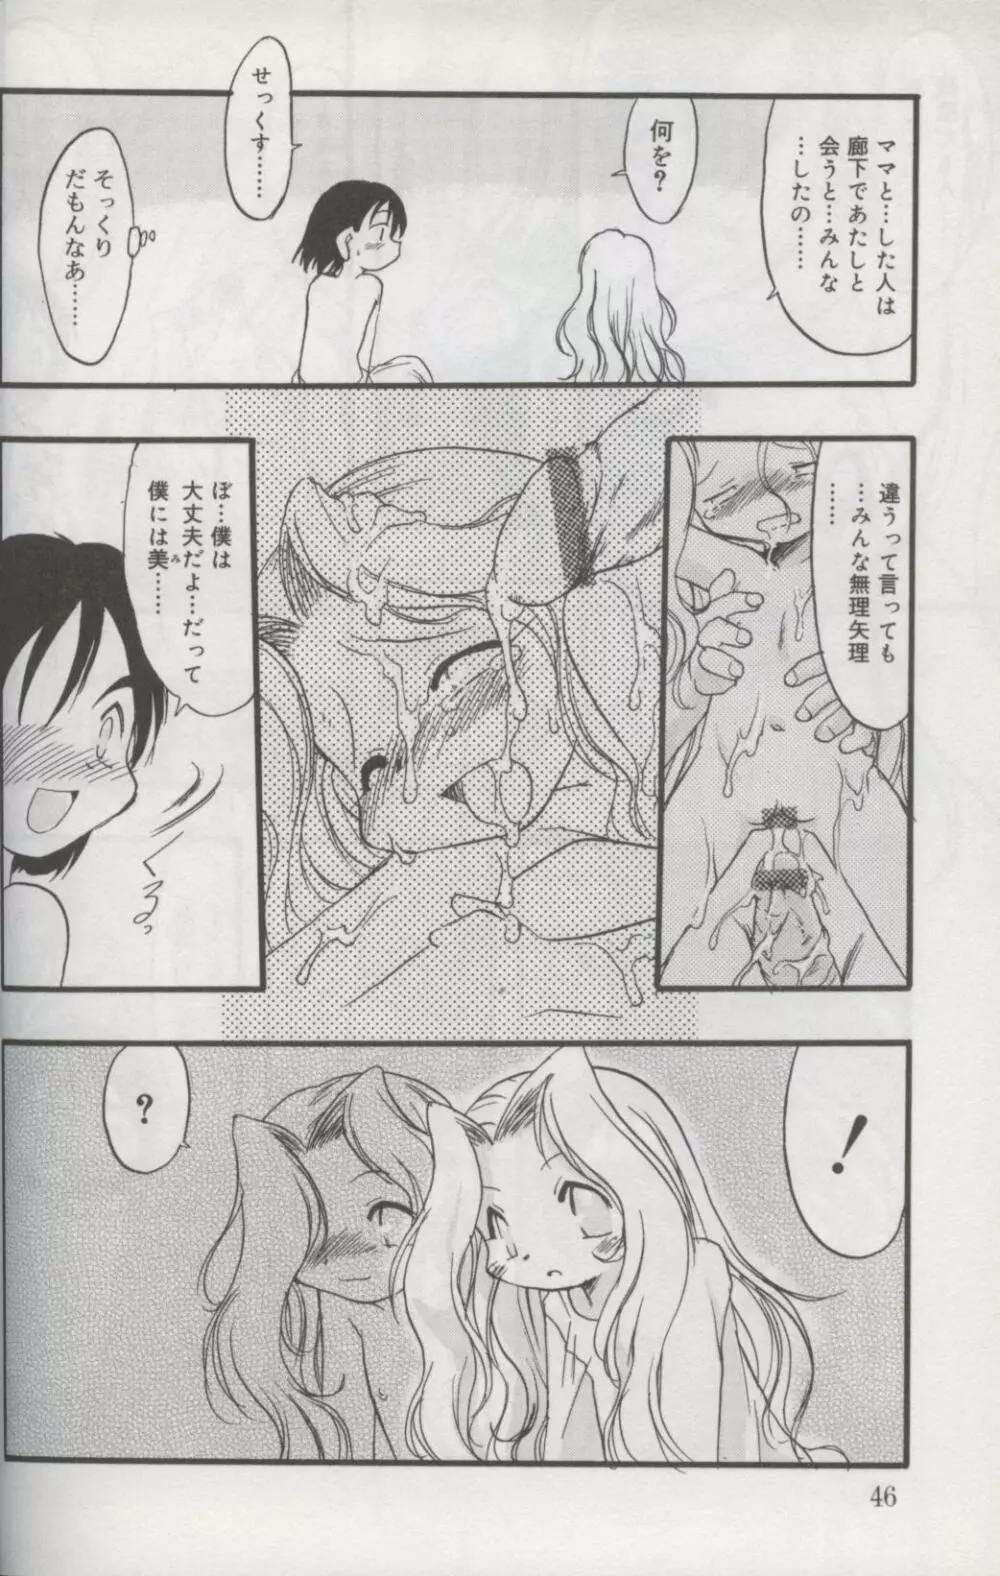 Kotori-kan Vol 3 43ページ